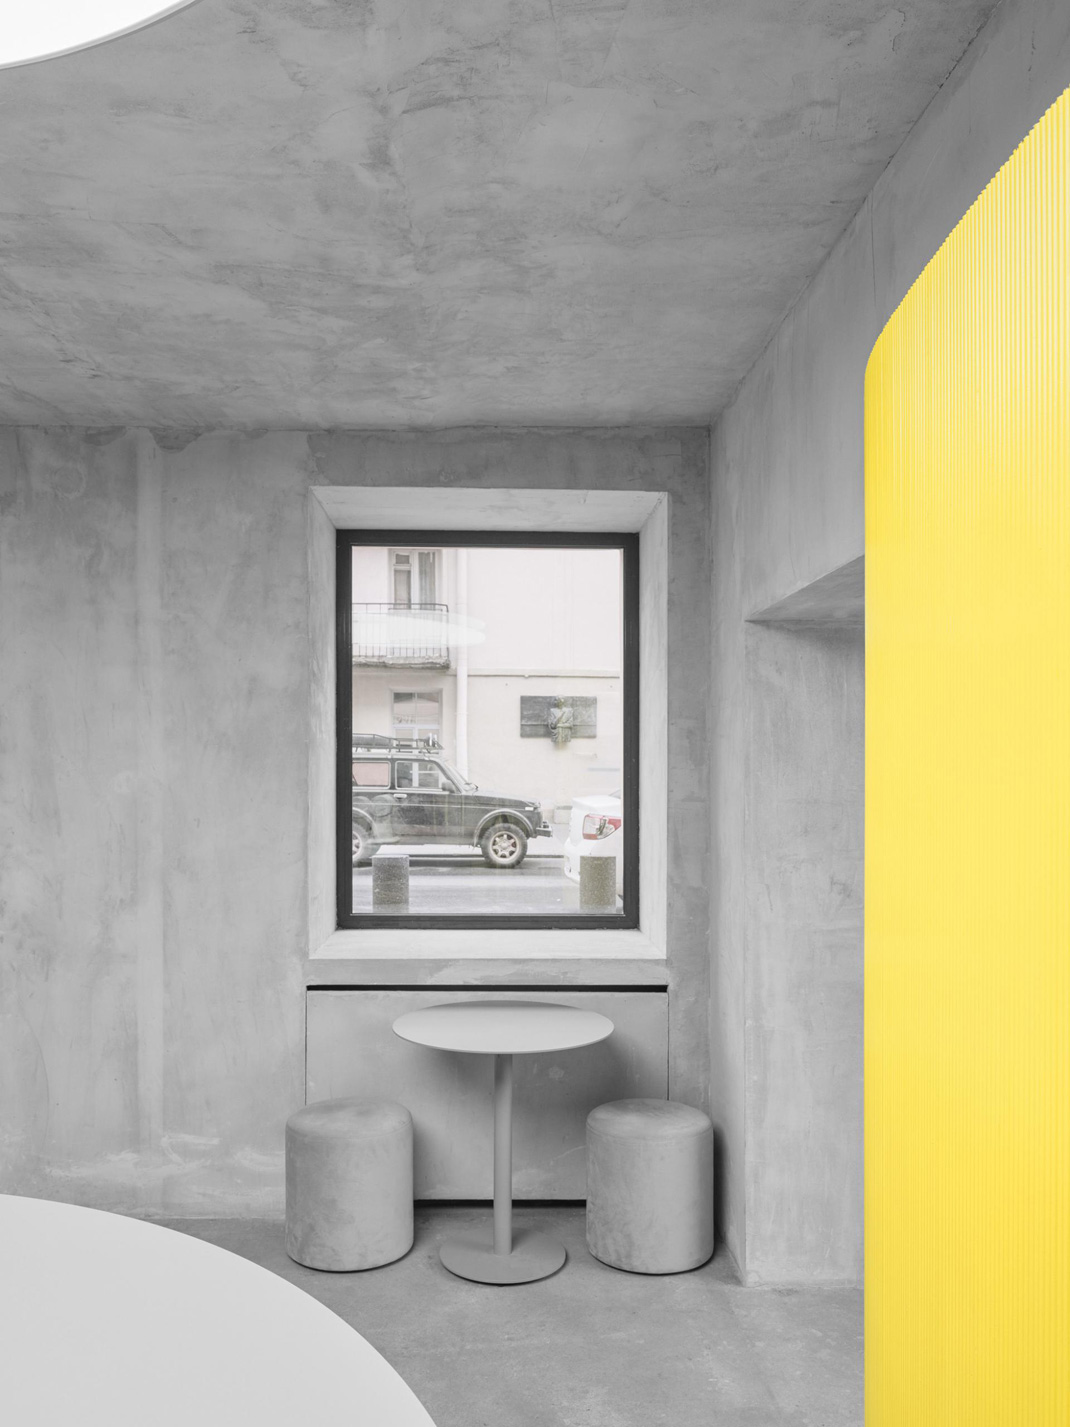 珠宝品牌Avgvst内的咖啡餐厅 圣彼得堡 咖啡店 木料 黄色 logo设计 vi设计 空间设计